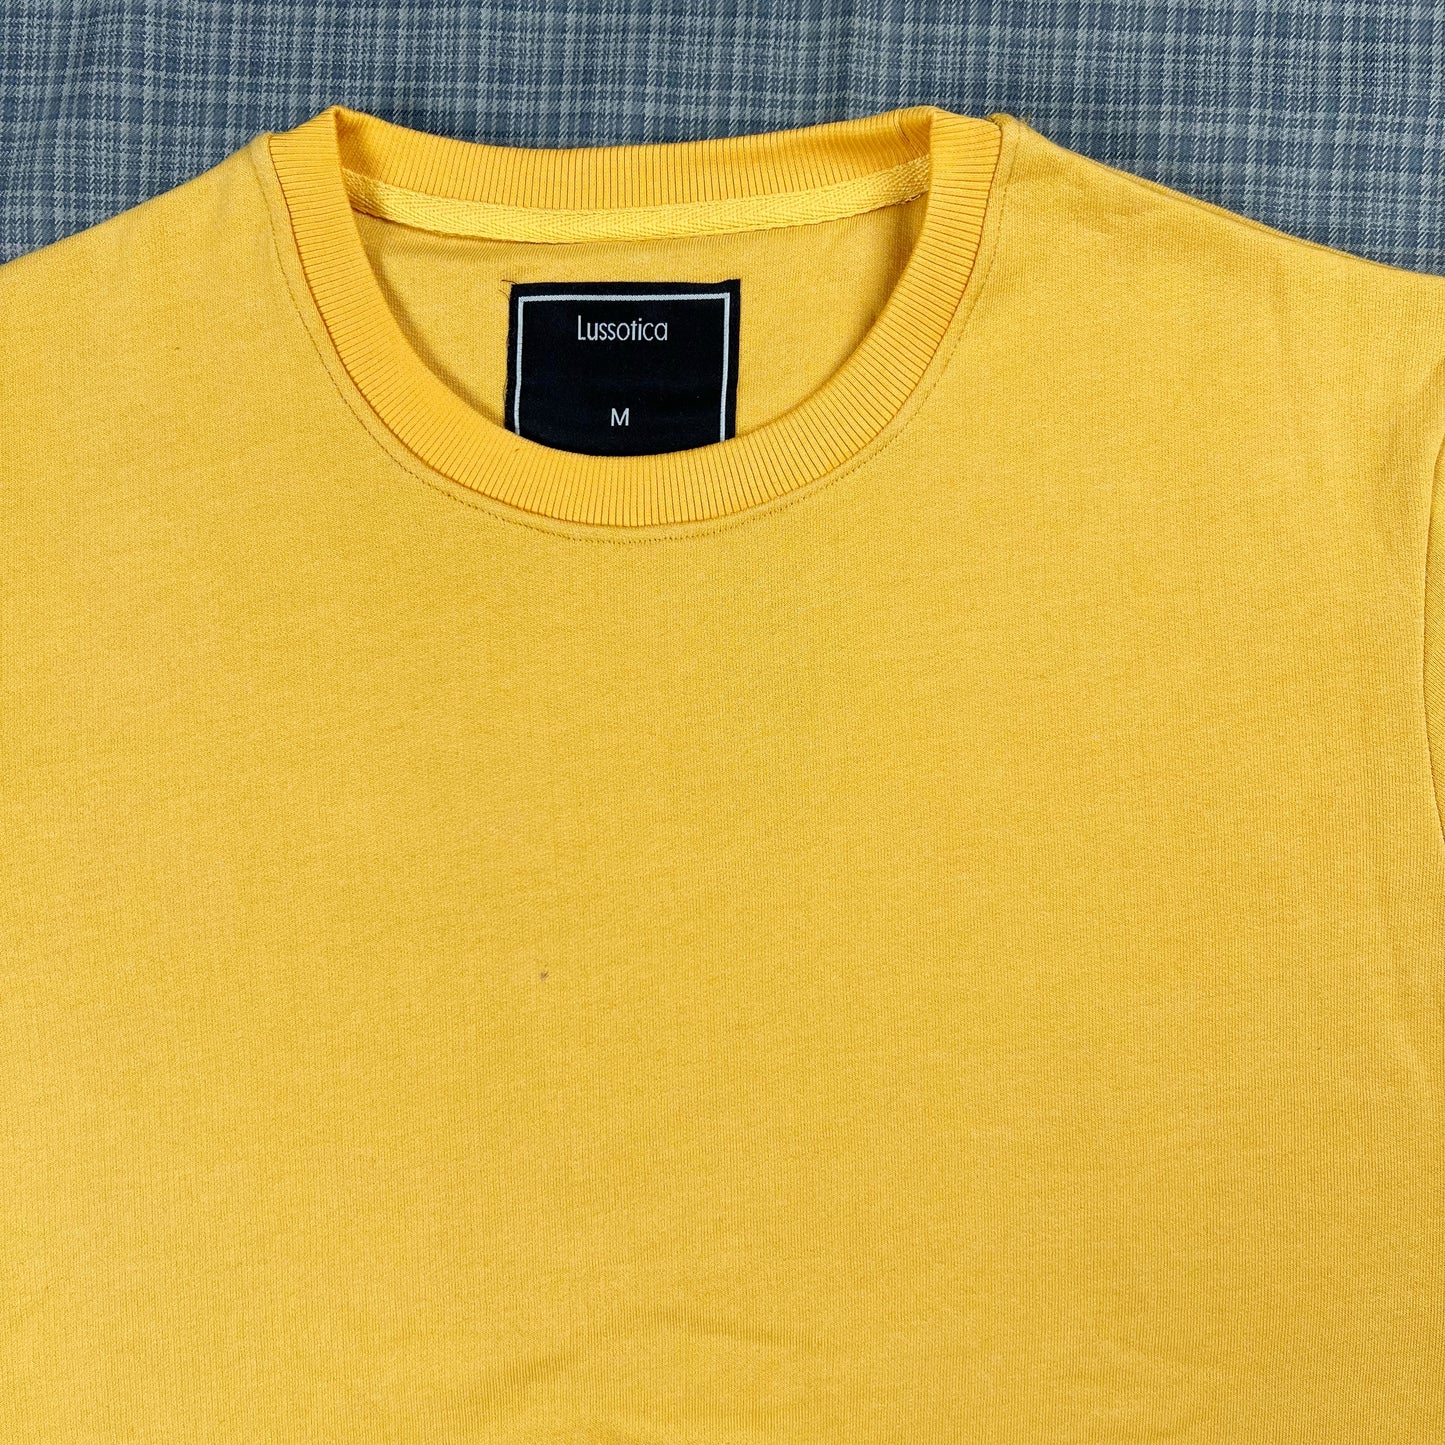 Sweatshirt by Lussotica - Yellow LU916